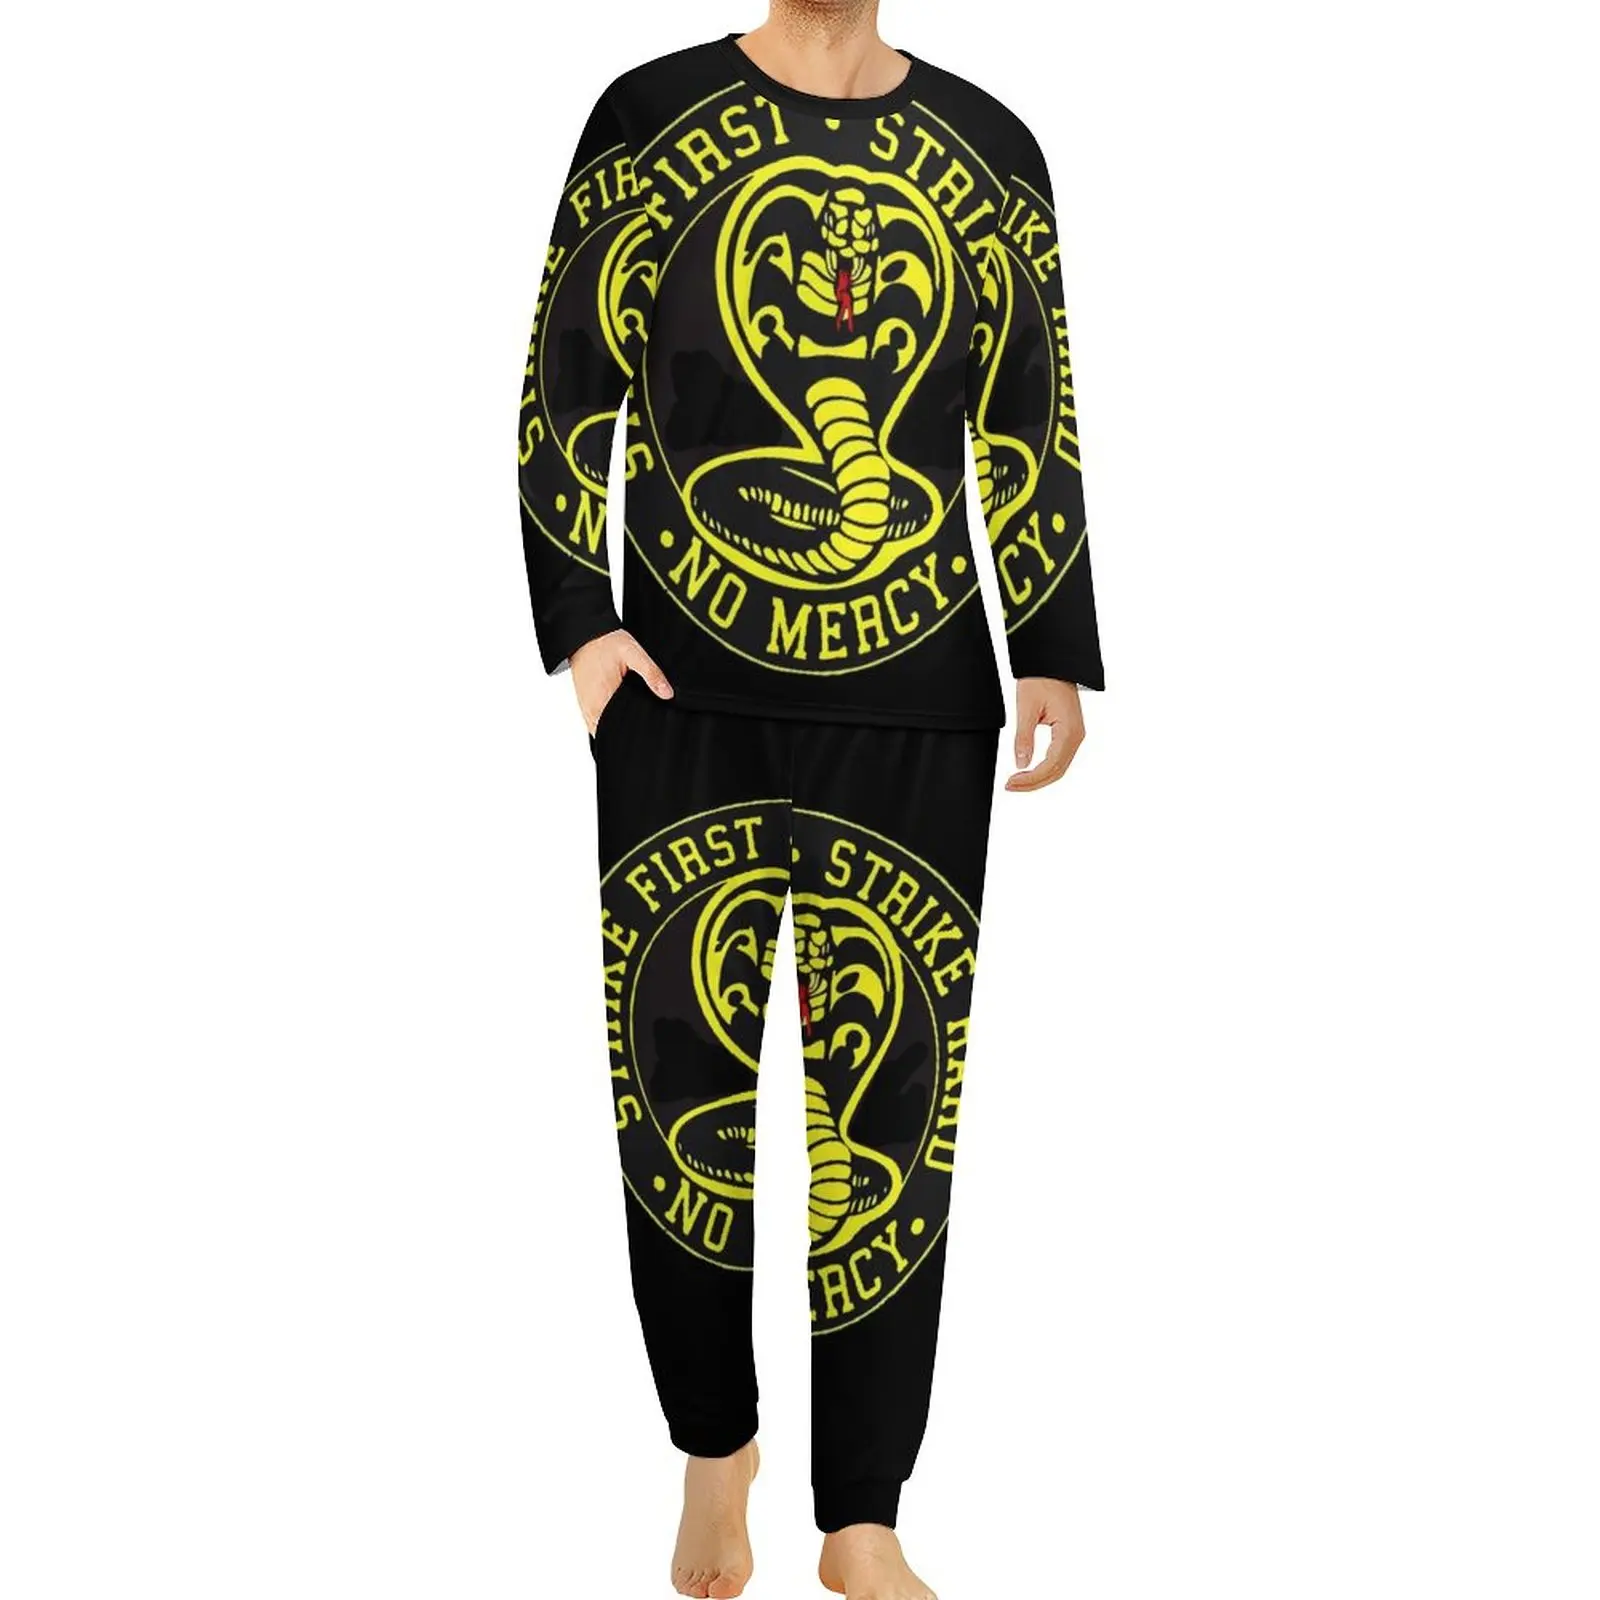 

Пижама-Кобра Kai Strike мужская с длинным рукавом, жесткая Милая Пижама, комплект из 2 предметов, весенняя одежда для сна с графическим принтом, идея для подарка